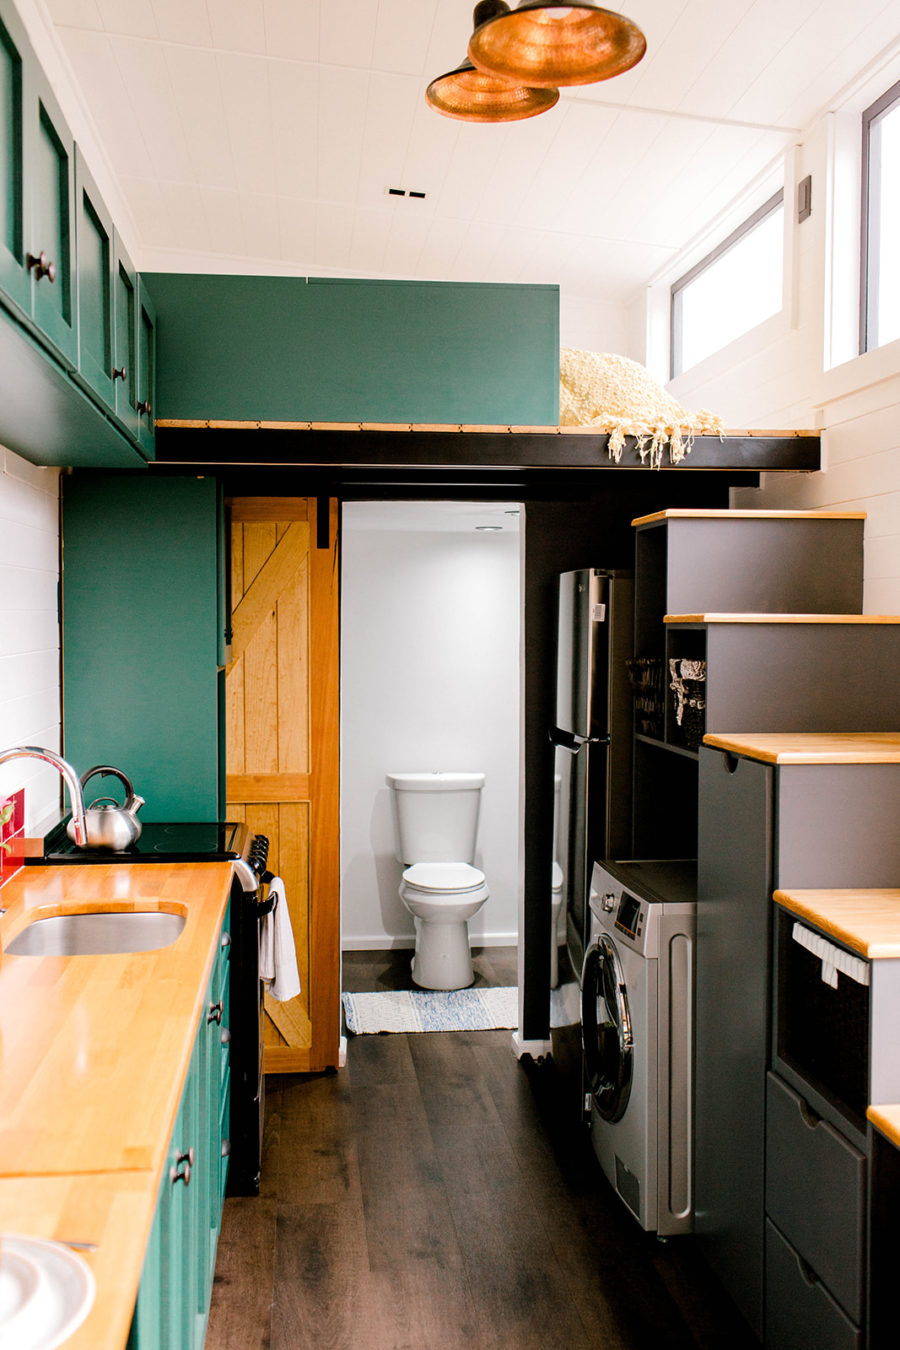 Quay trở lại với tầng dưới, bạn sẽ thấy ẩn đằng sau cánh cửa trượt kiểu cửa chuồng bằng gỗ là phòng vệ sinh và phòng tắm nhỏ gọn.